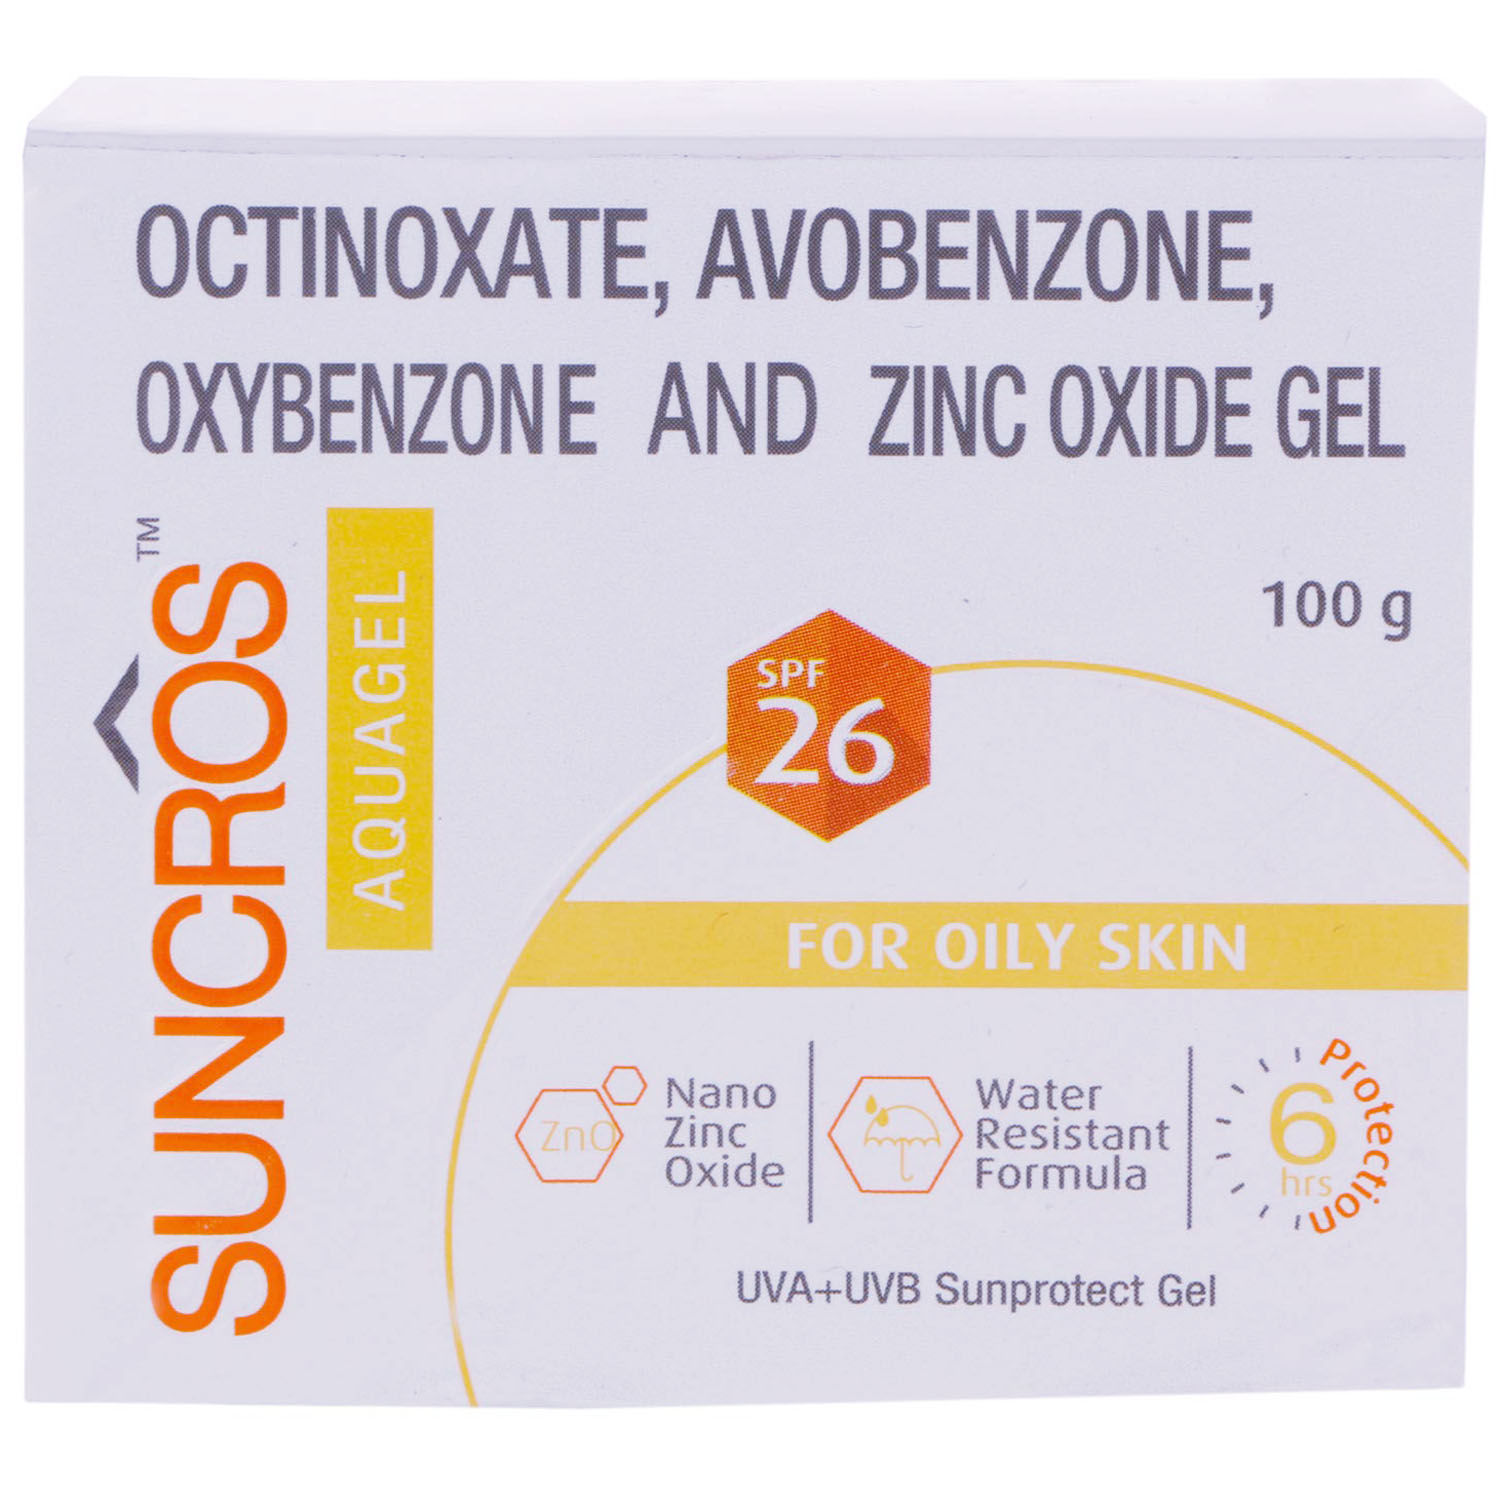 Suncros Aquagel For Oily Skin SPF 26, 100 gm, Pack of 1 